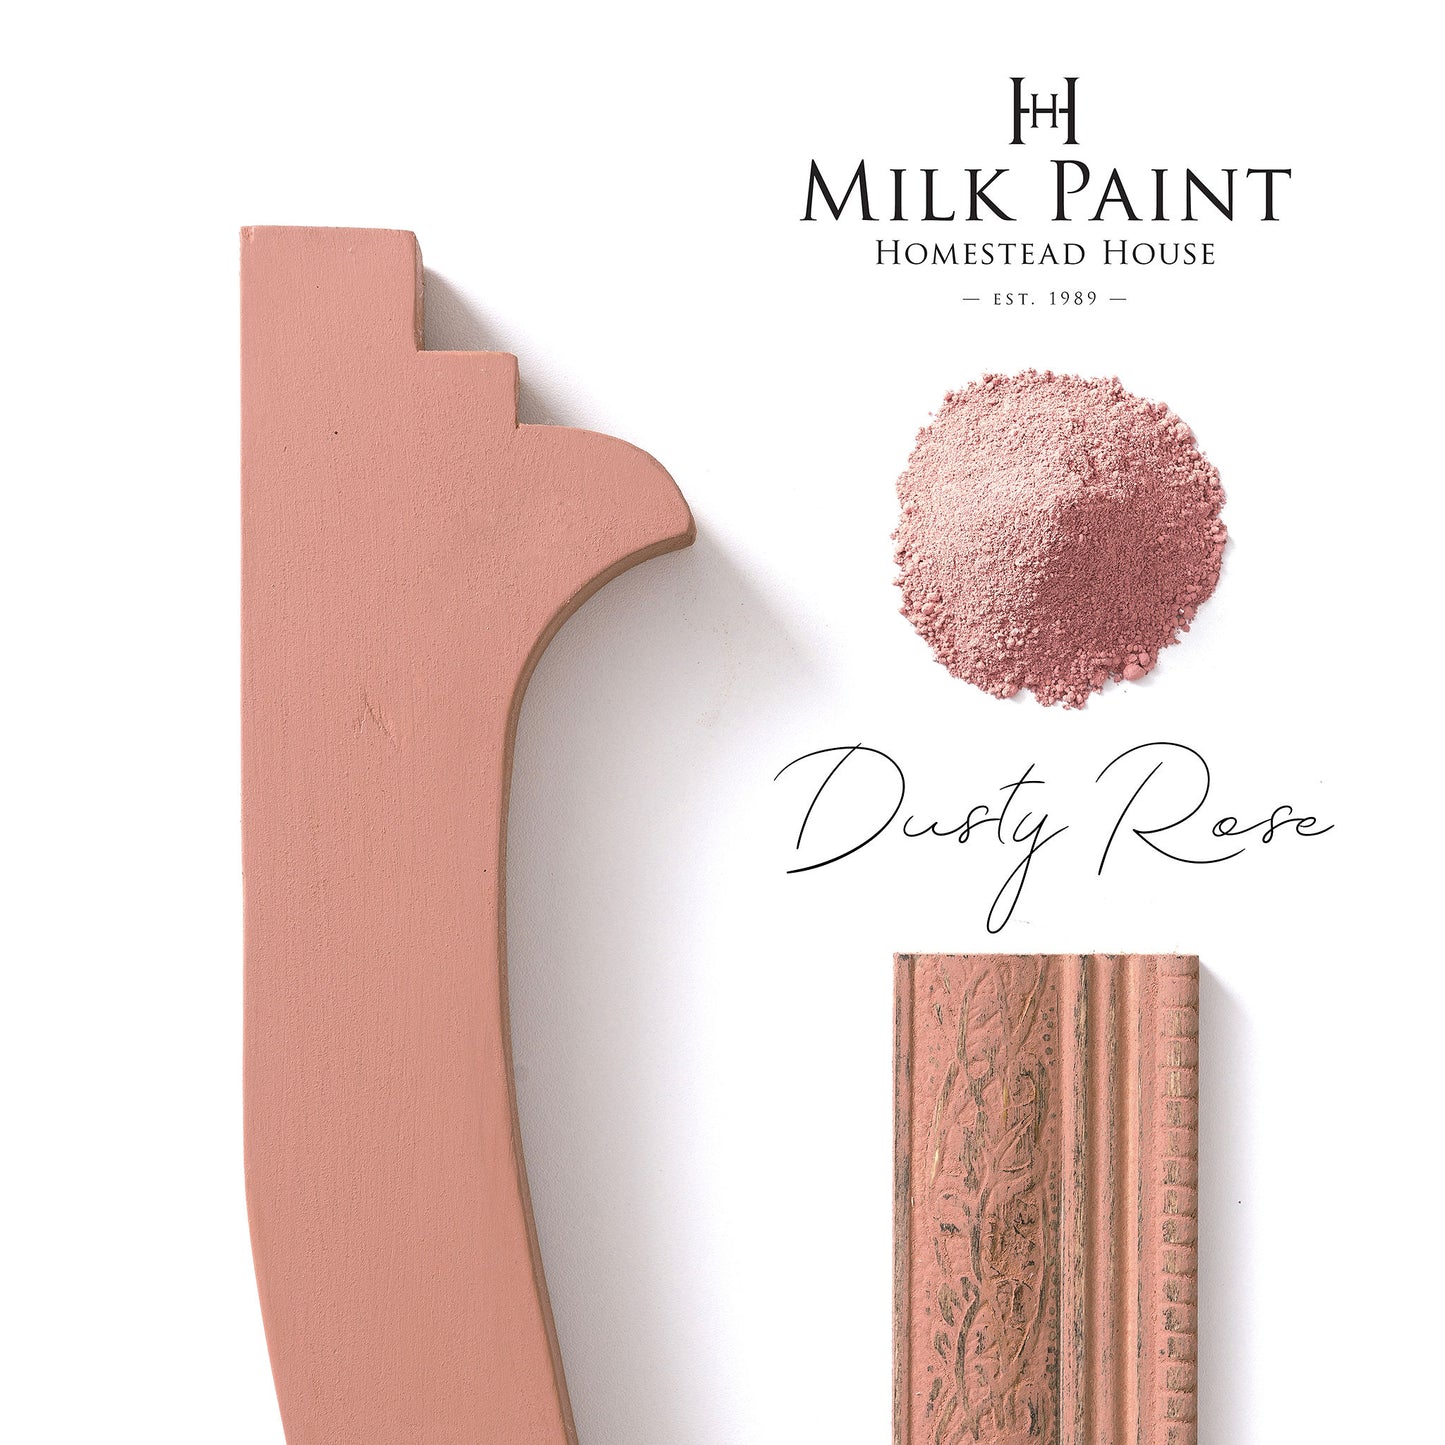 Dusty Rose - Vintage pinkki, hieman oranssiin vivahtava.  Uudenlainen sekoita-ja-maalaa maitomaali tuo uusia sävyjä käyttöösi. Lisää vain vettä ja maali on valmis. Maitomaali on aito kalkkimaali, se sisältää aitoa kalkkia (ei liitujauhoa), maidon kaseiinia sekä väripigmenttinä aitoa luonnon micajauhetta. 